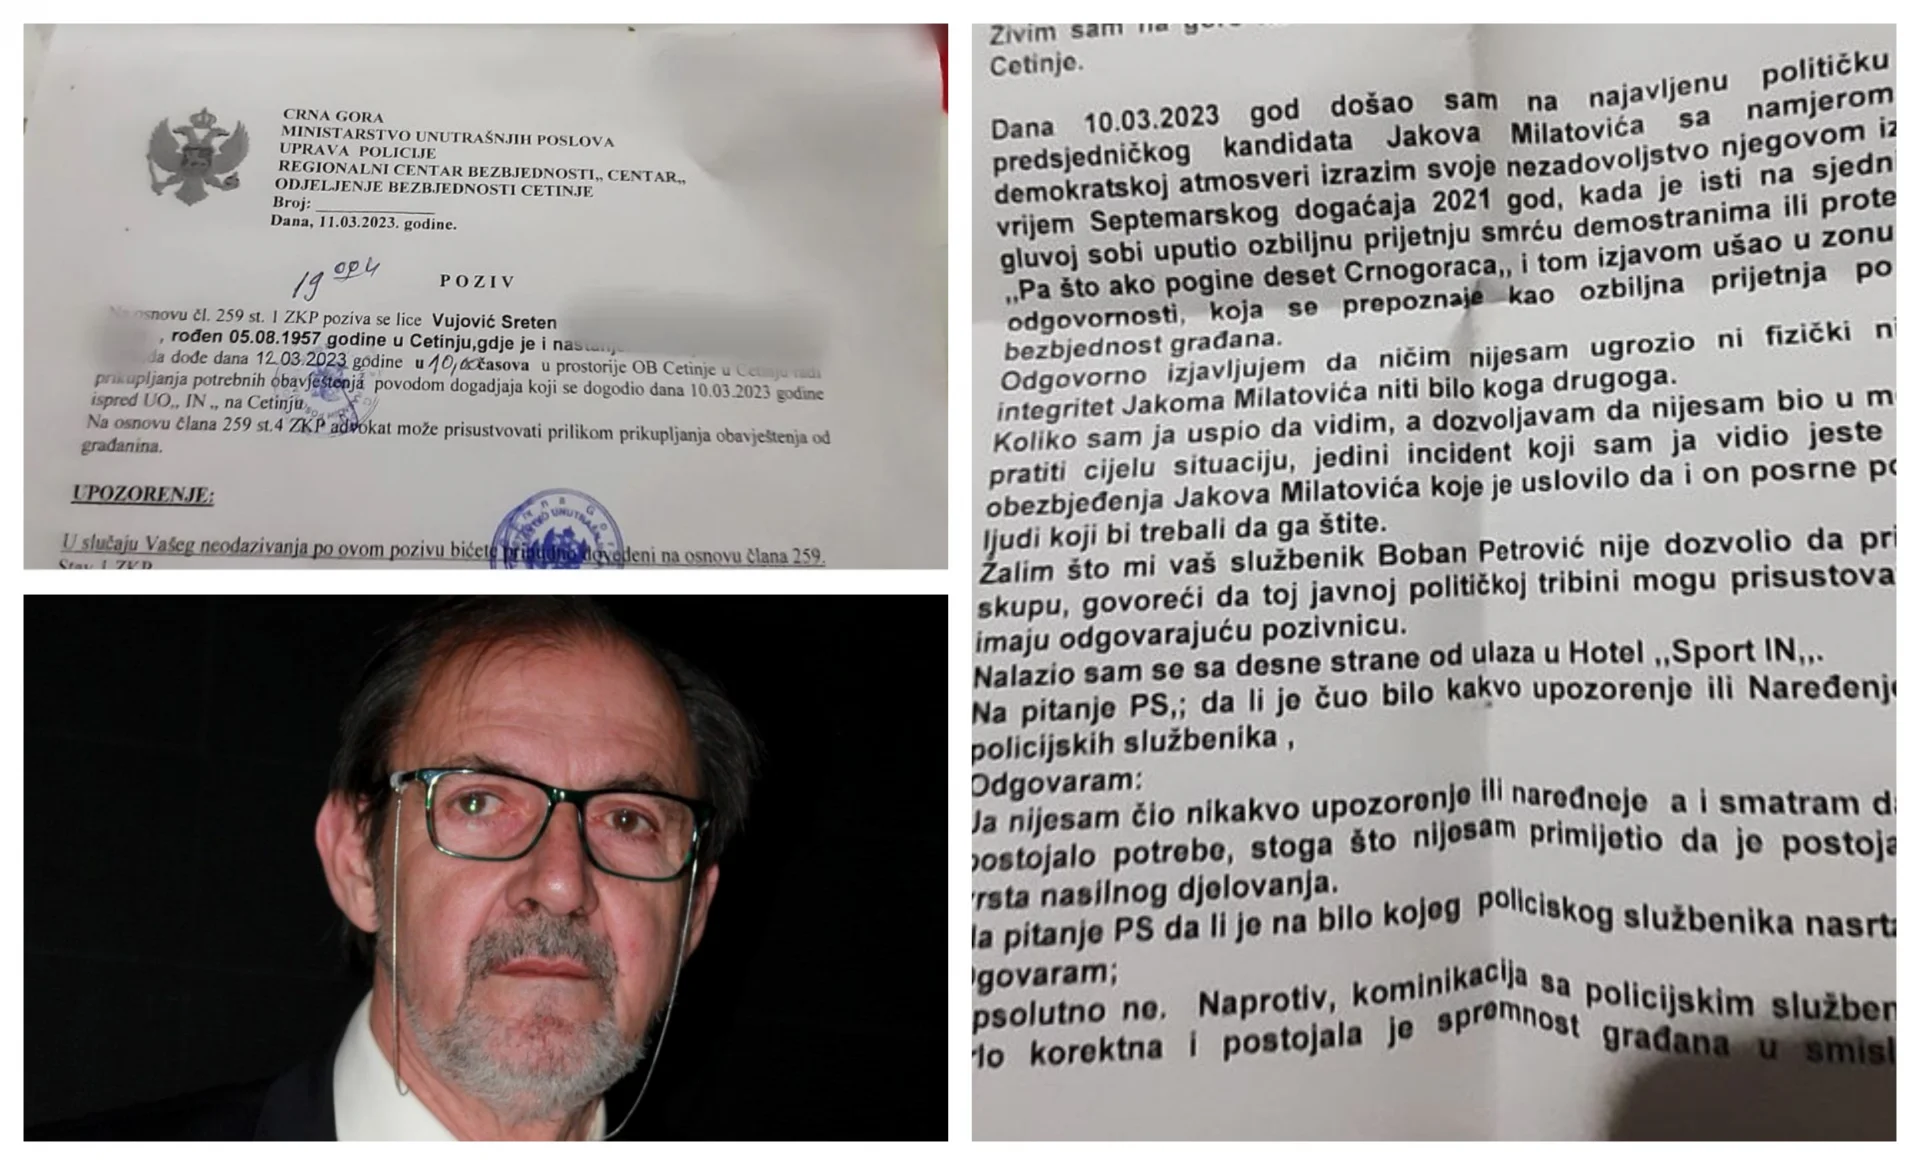 Vujović na saslušanju u OB Cetinje: Nijesam ugrozio ni fizički ni moralni integritet Milatovića